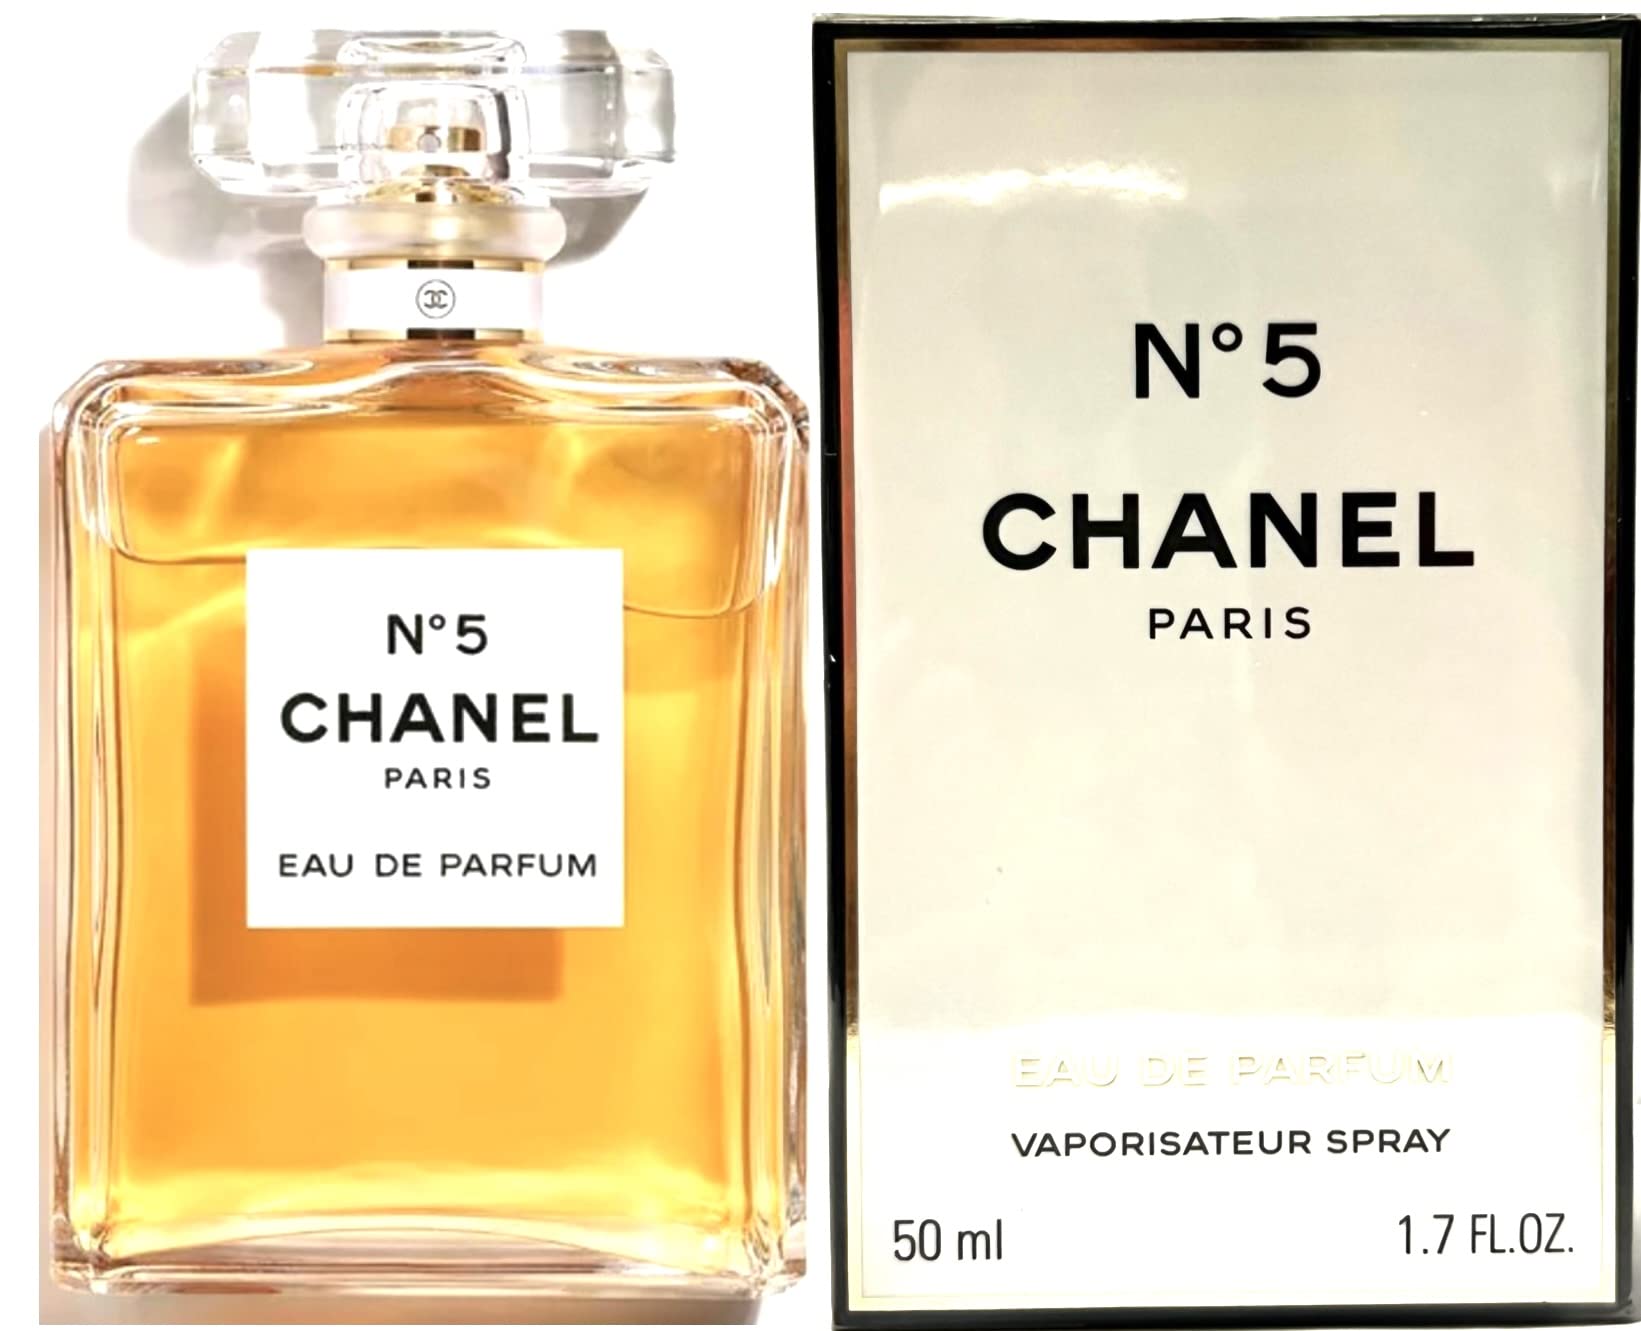 Chanel Allure Sensuelle EDP 50ml  LAMOON